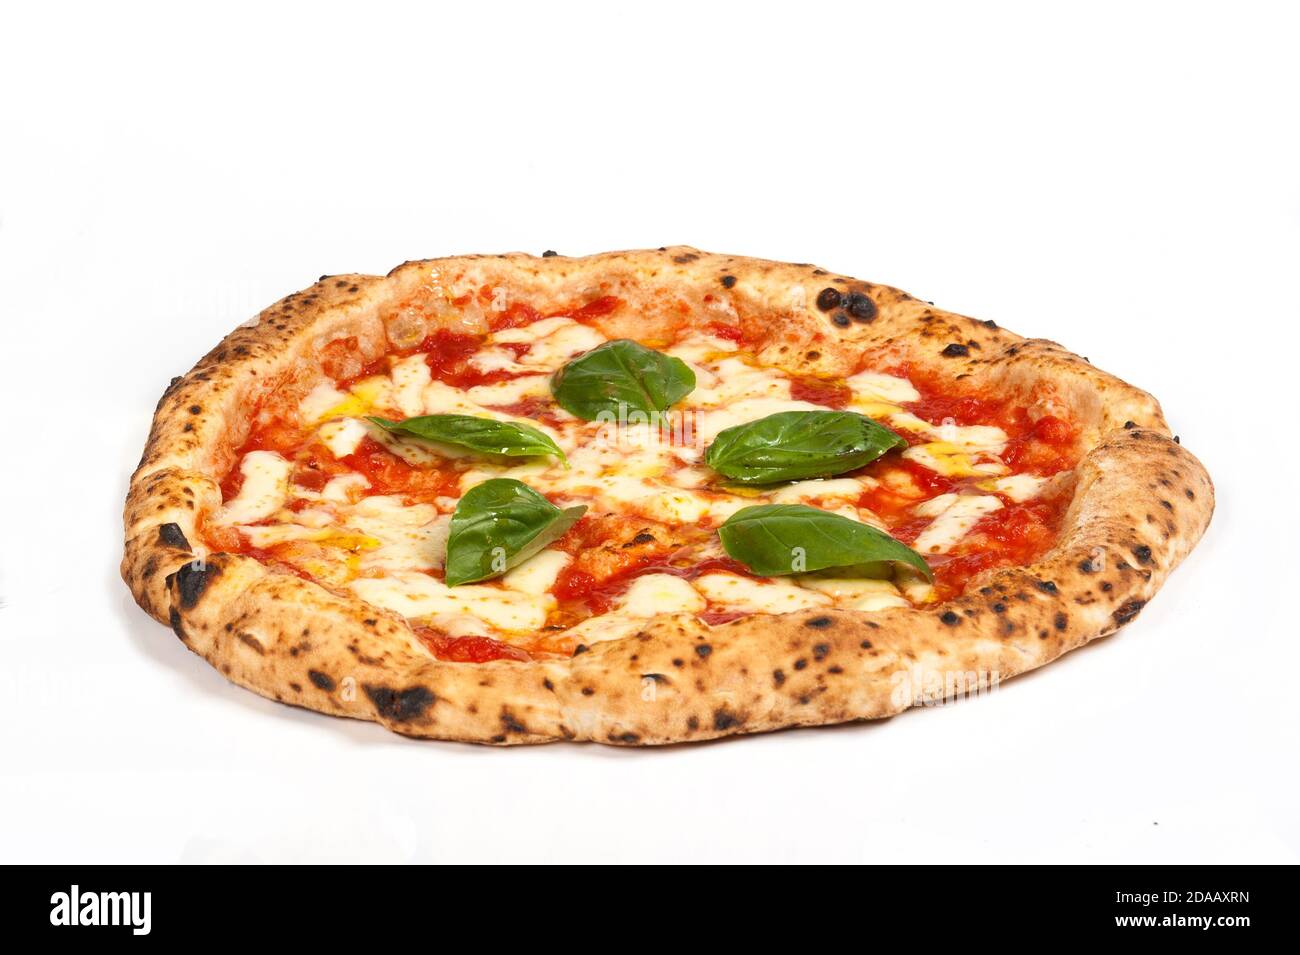 что входит в состав неаполитанской пиццы фото 87